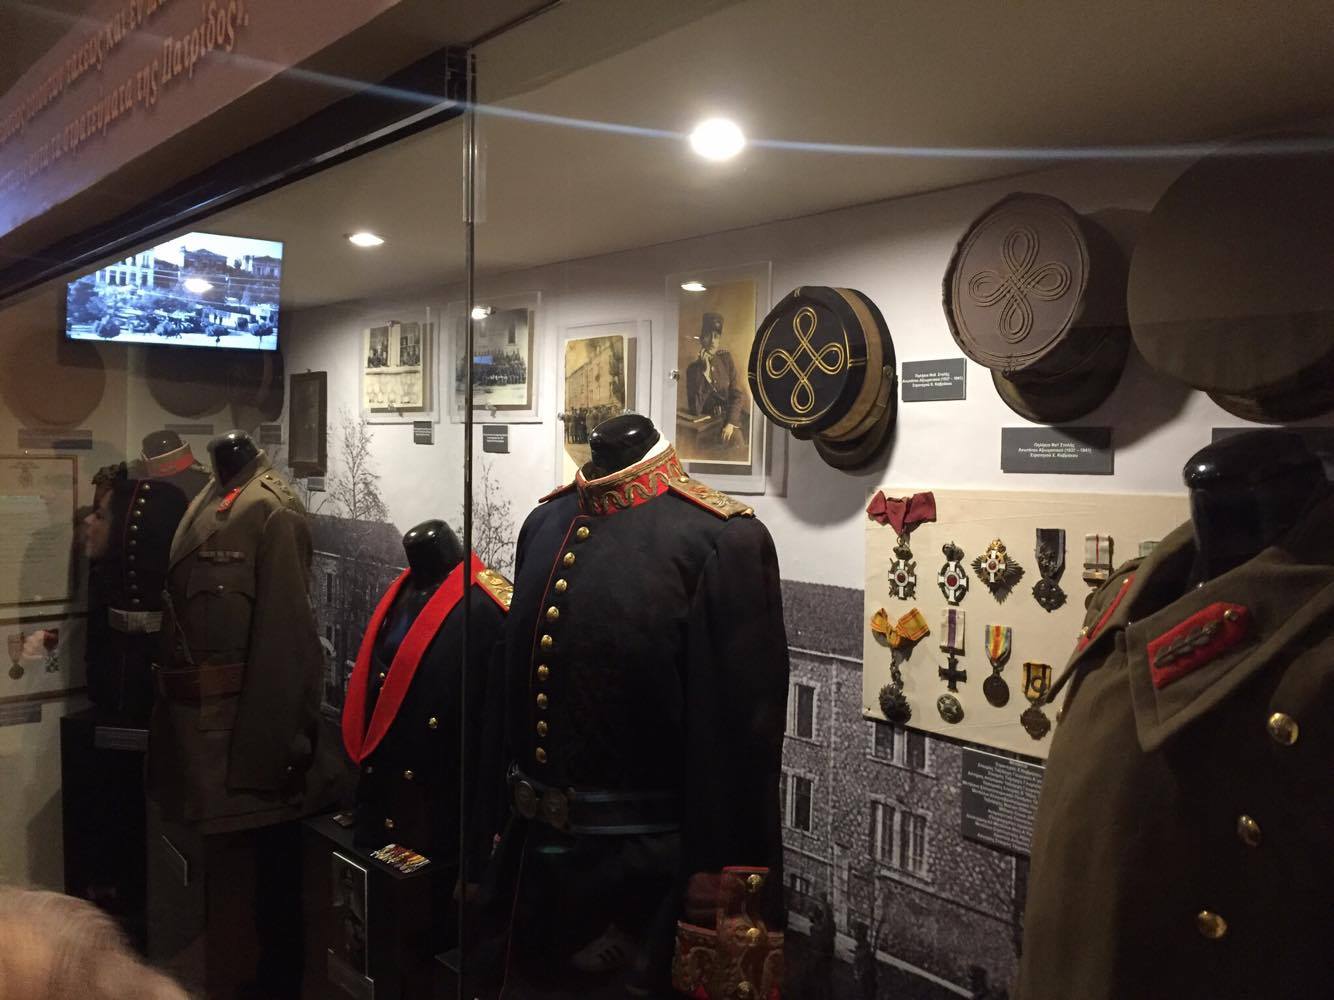 Eγκαινιάστηκε το στρατιωτικό μουσείο στις εγκαταστάσεις της ΣΜΥ στα Τρίκαλα - Φωτογραφία 4